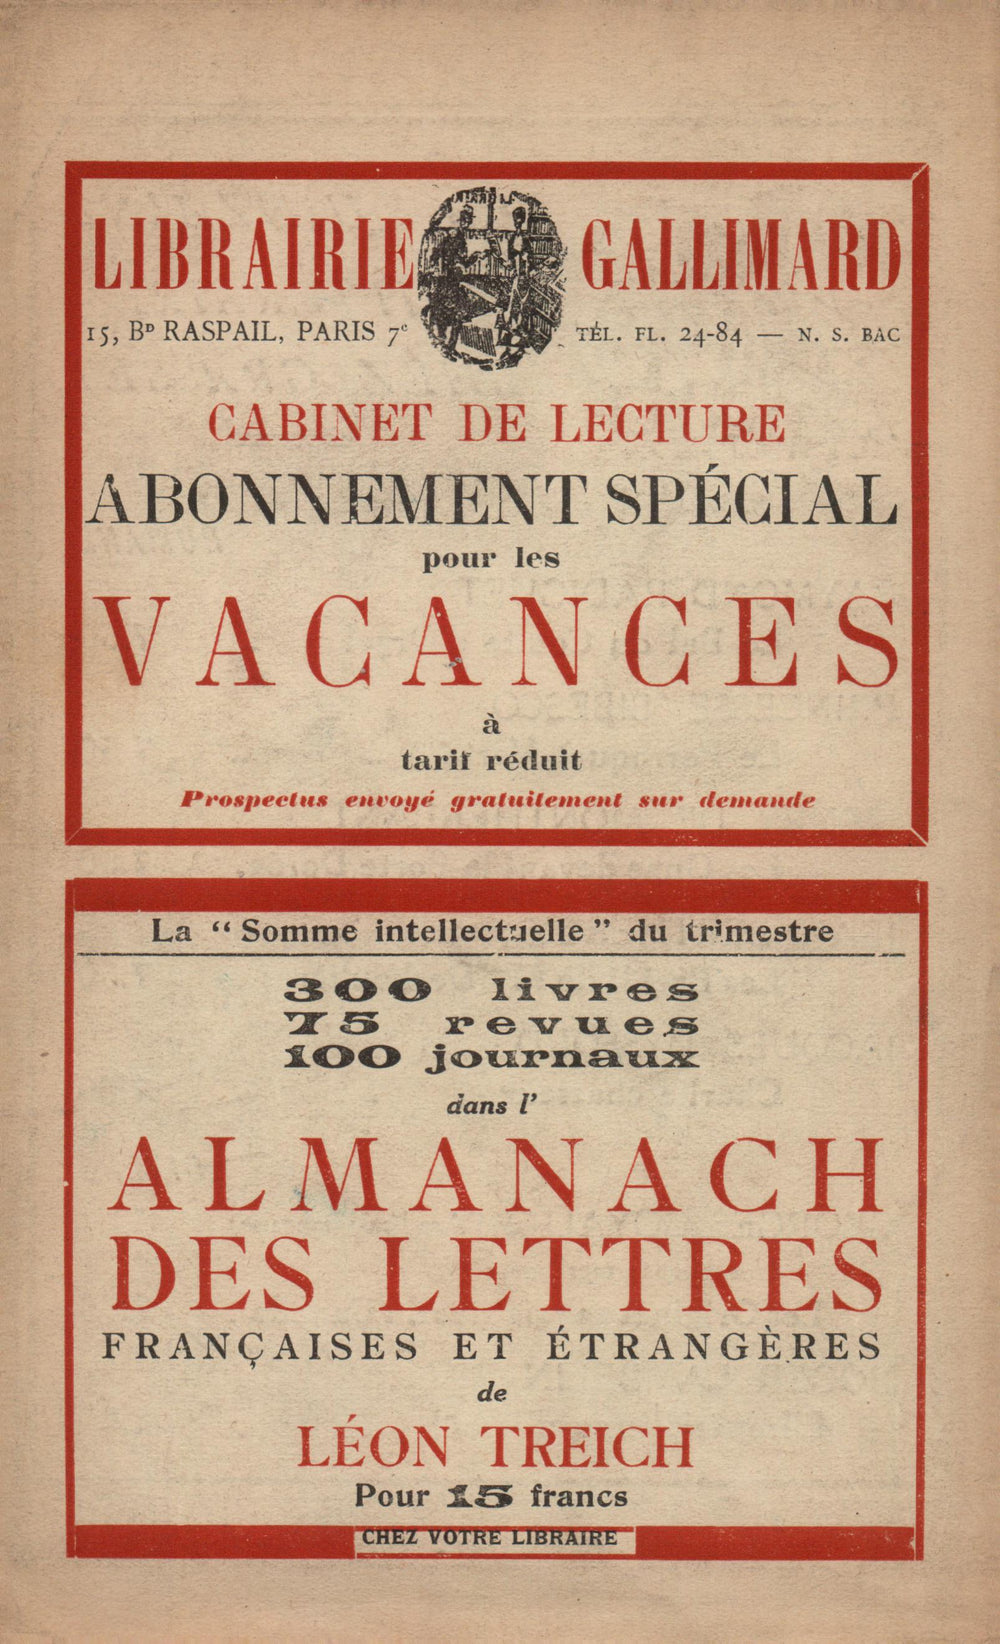 La Nouvelle Revue Française N' 131 (Aoűt 1924)